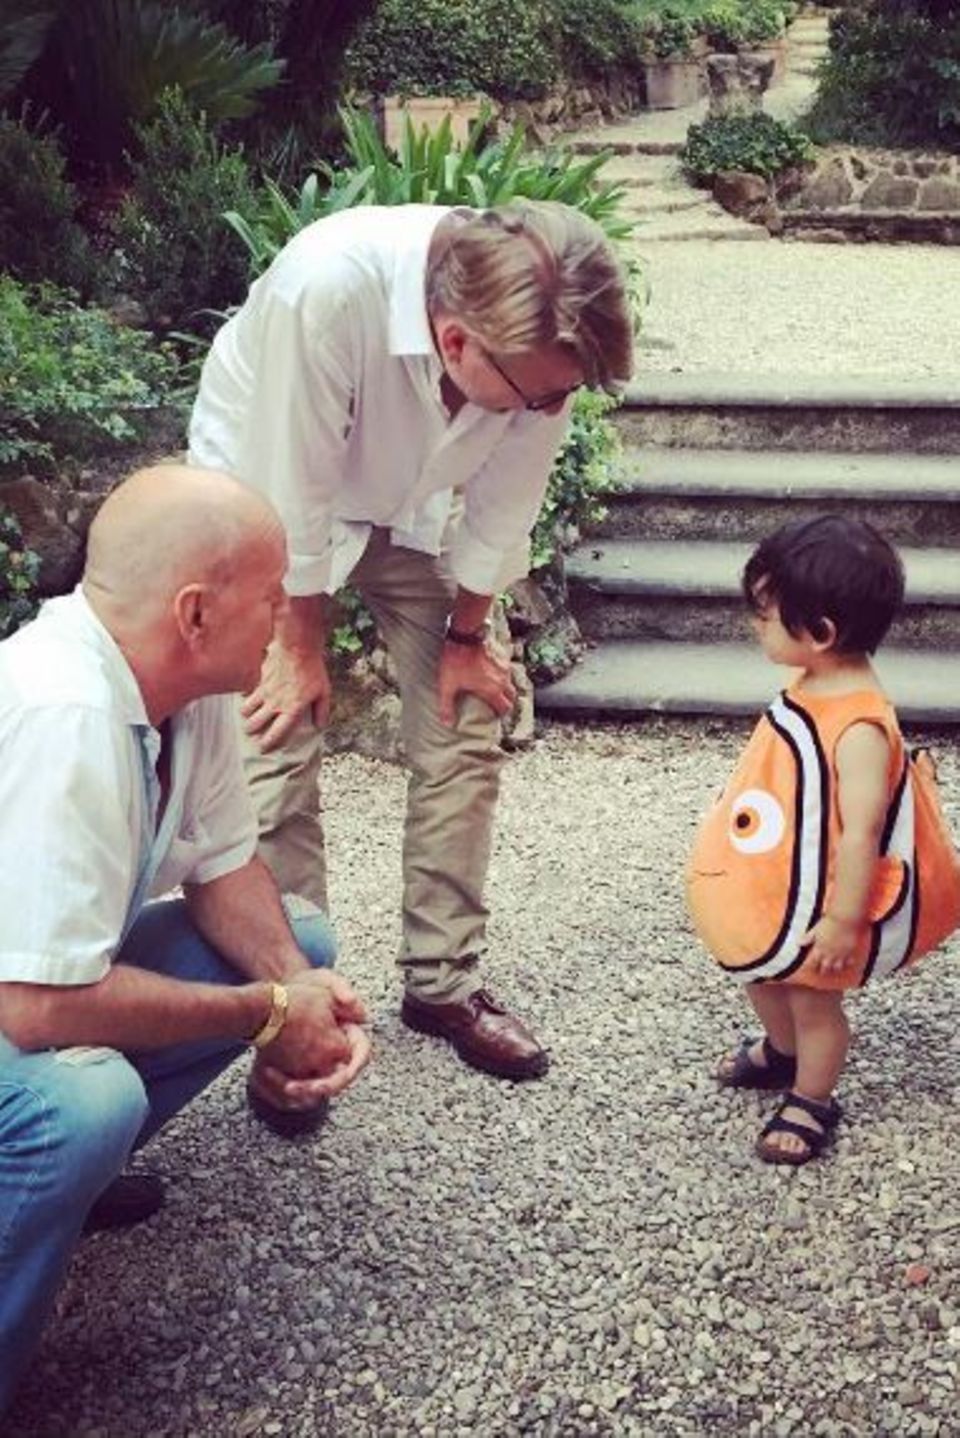 August 2016   Die suche hat ein Ende, Nemo ist gefunden! Von niemand anderen als von Bruce Willis persönlich. Dieser entzückende kleine Junge hat sofort das Herz des Hollywoodschauspielers erobert, der selber fünf Kinder hat.